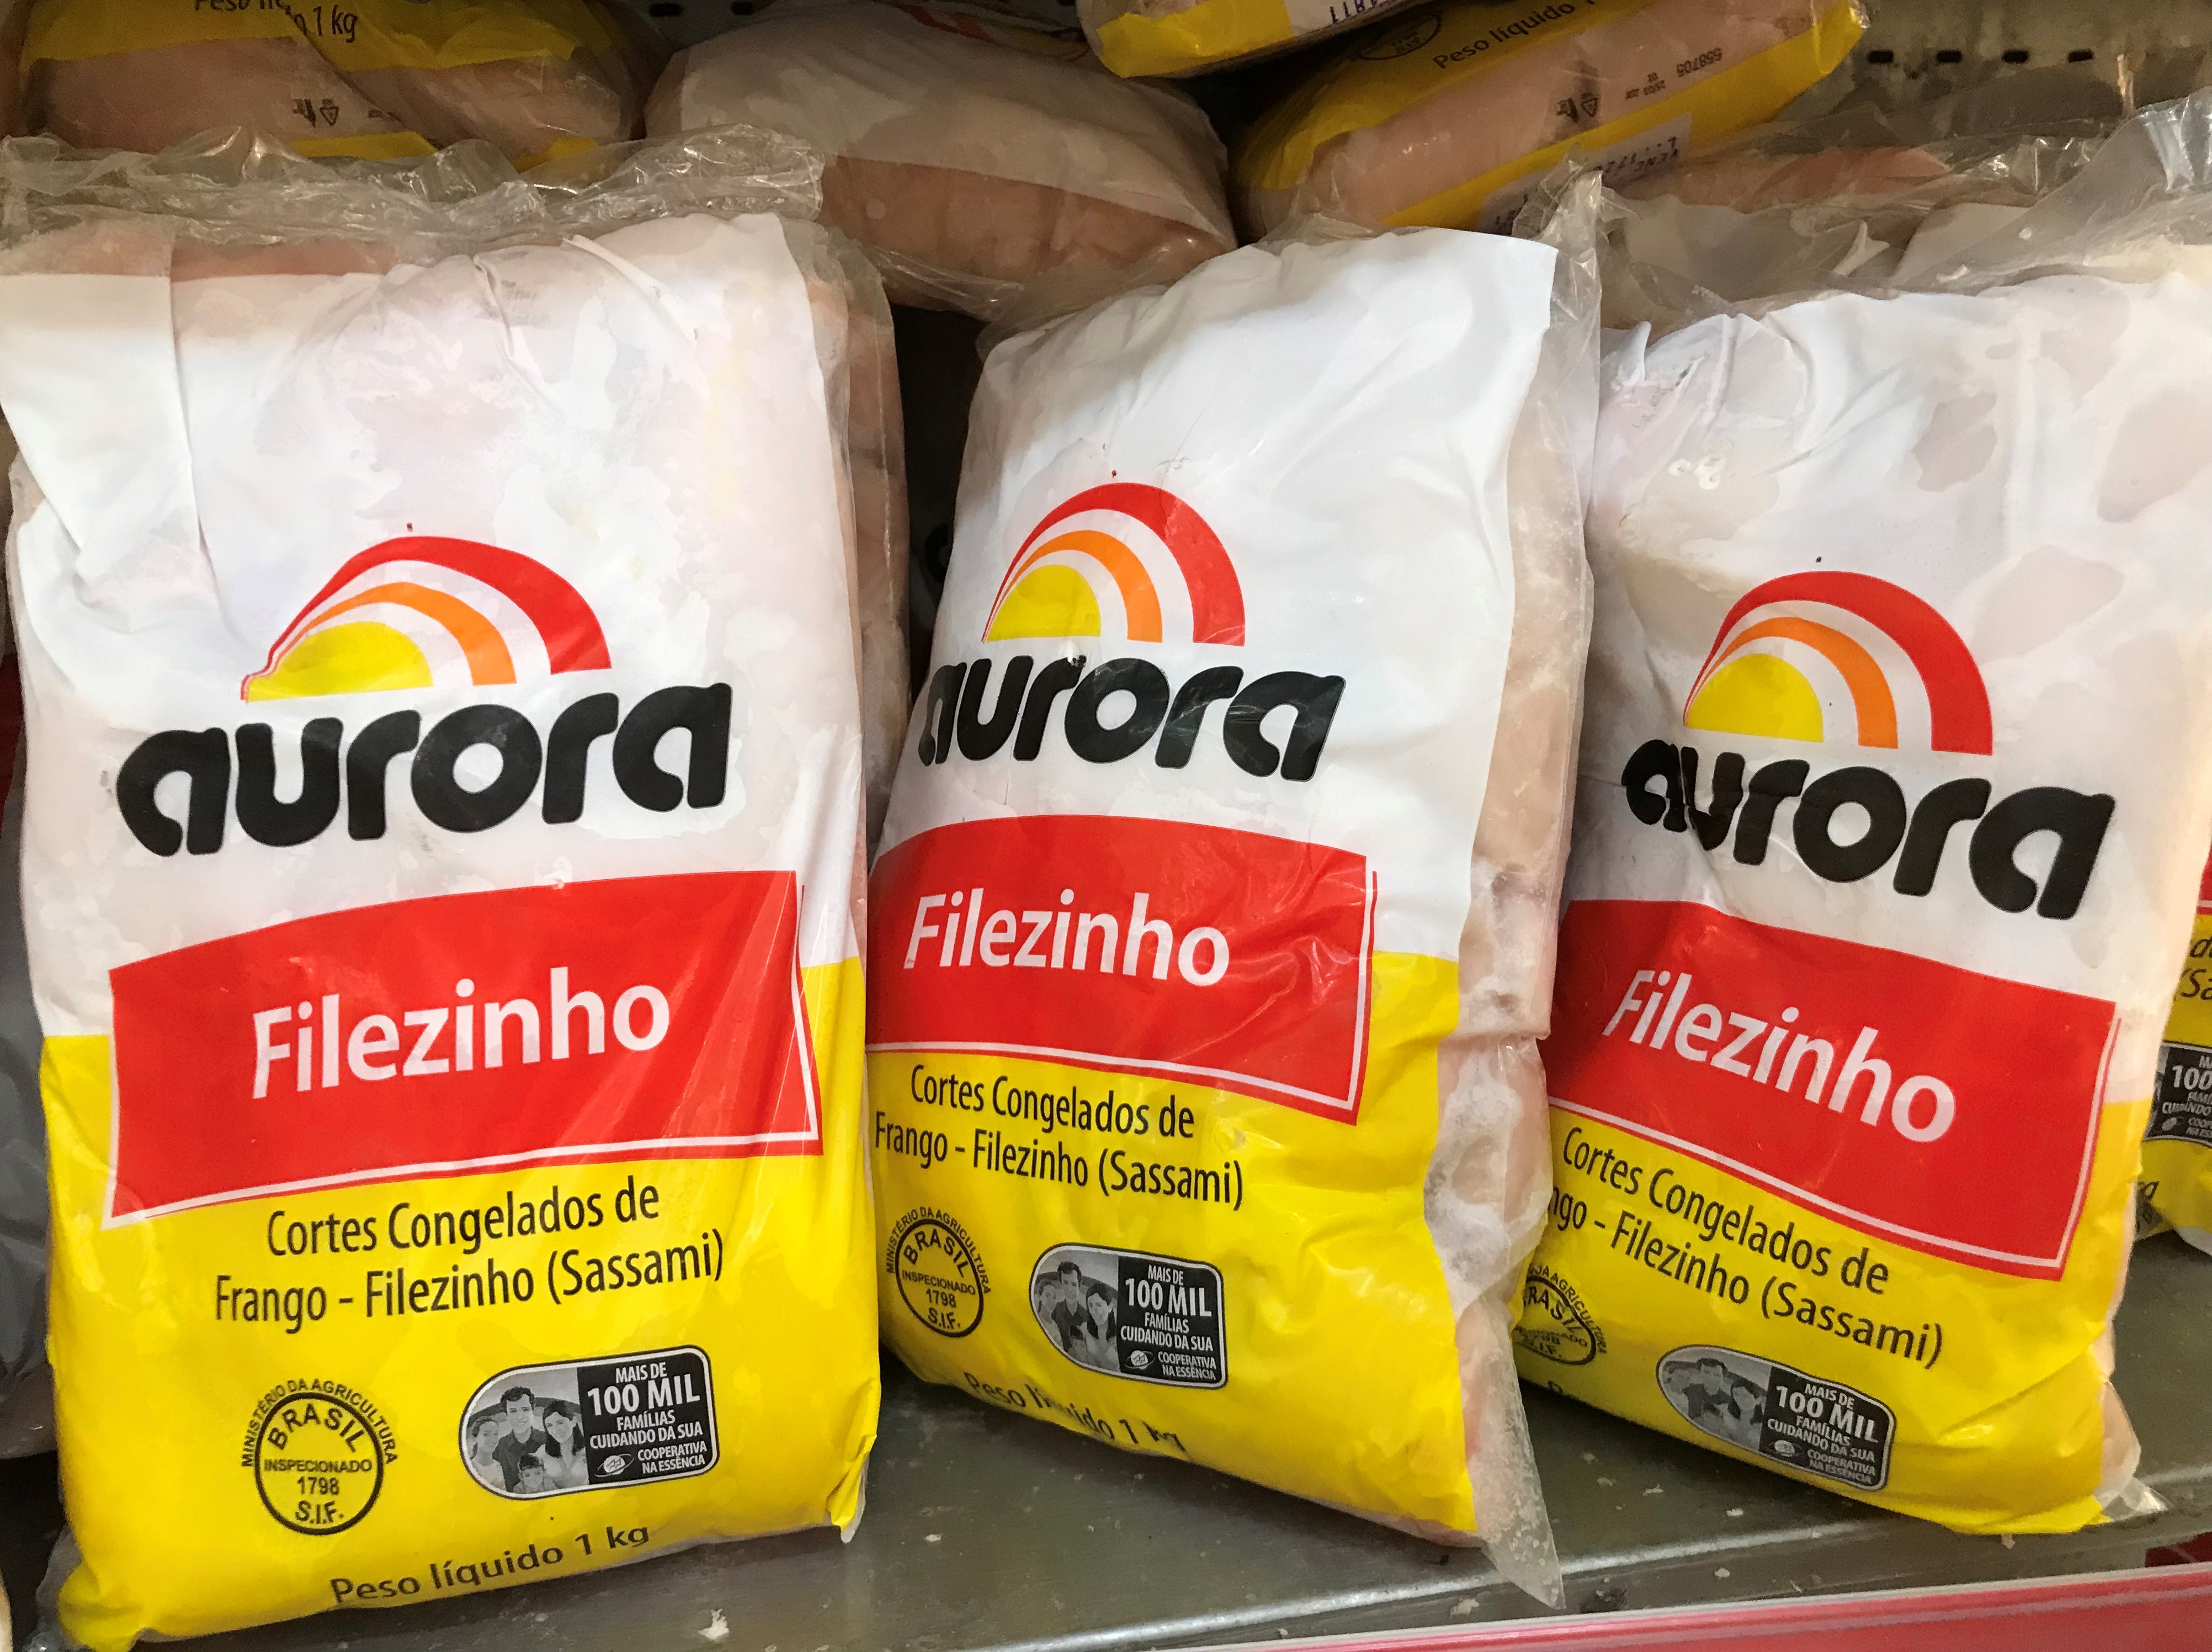 Produtos da Aurora à venda em supermercado no Rio de Janeiro (RJ) 13/08/2020 (Foto: Ricardo Moraes/Reuters)